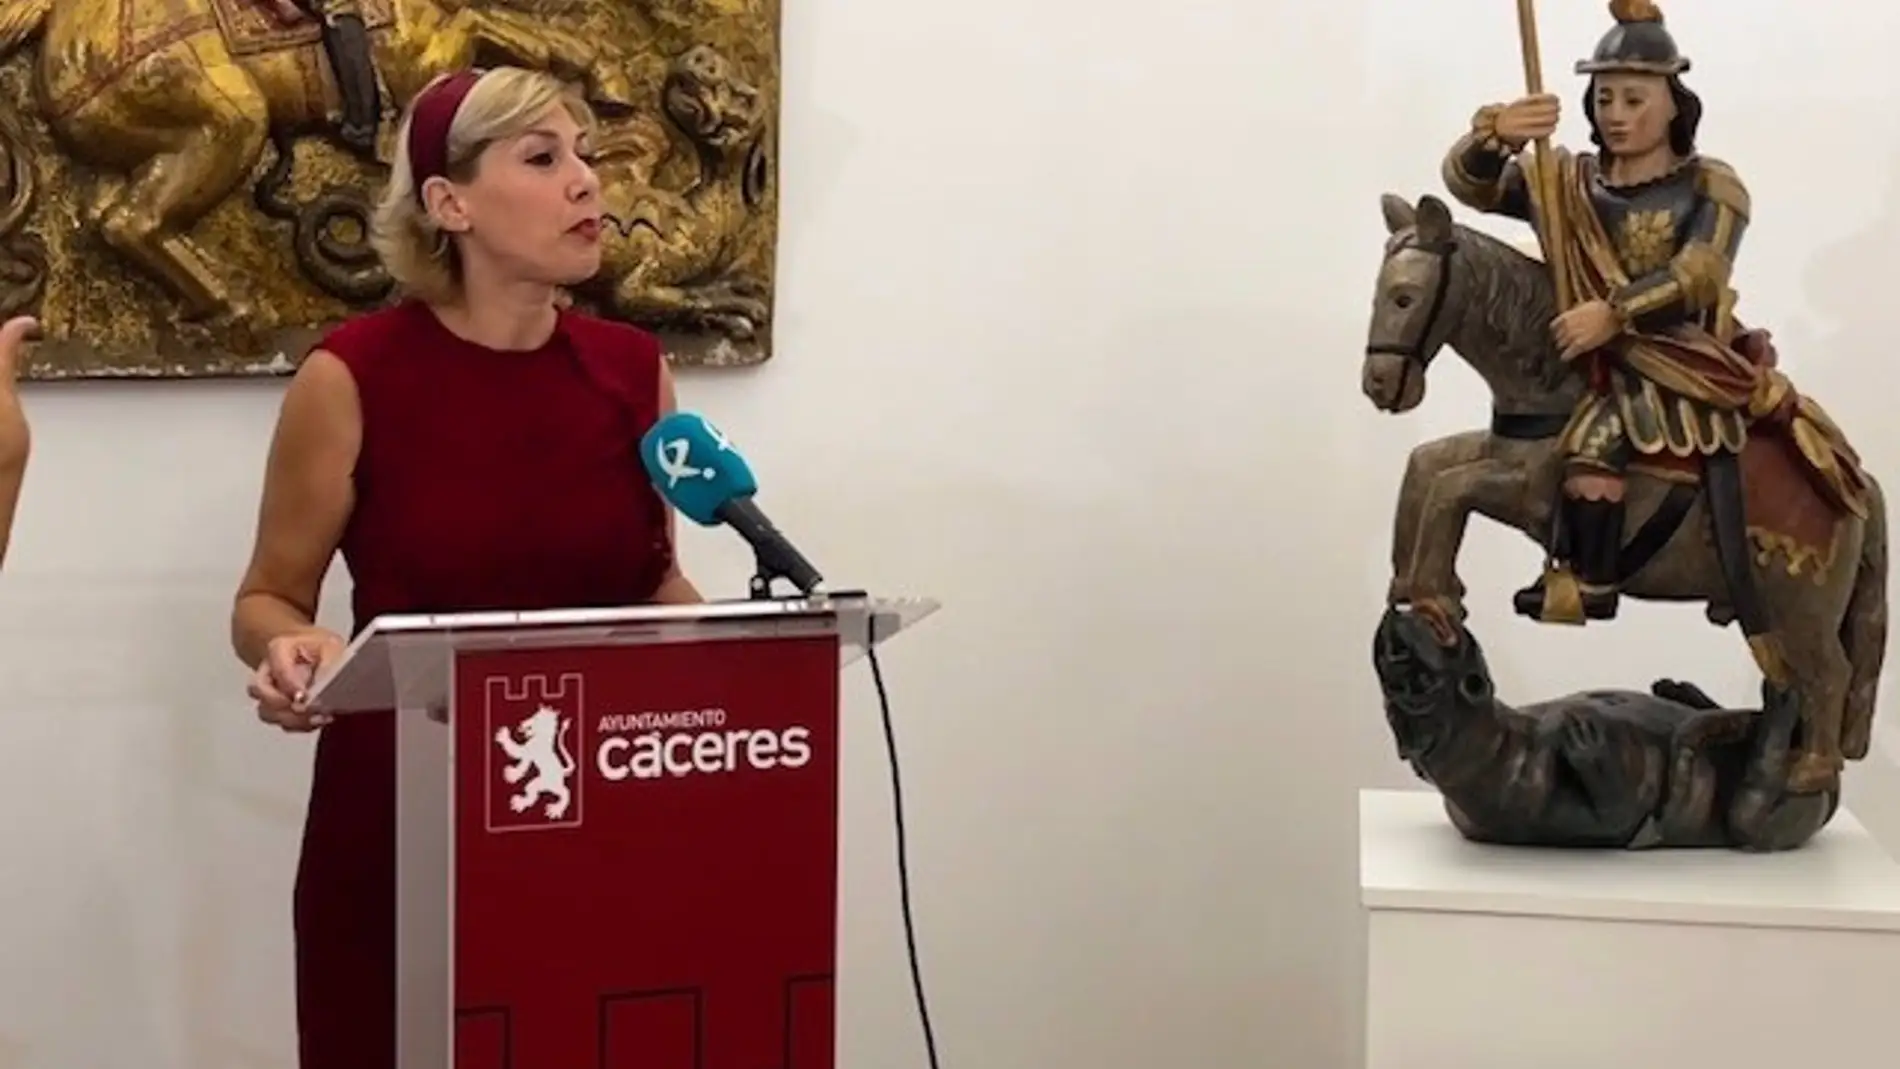 La estatua de San Jorge, patrón de Cáceres, vuelve a ser expuesta al público en el Palacio de la Isla